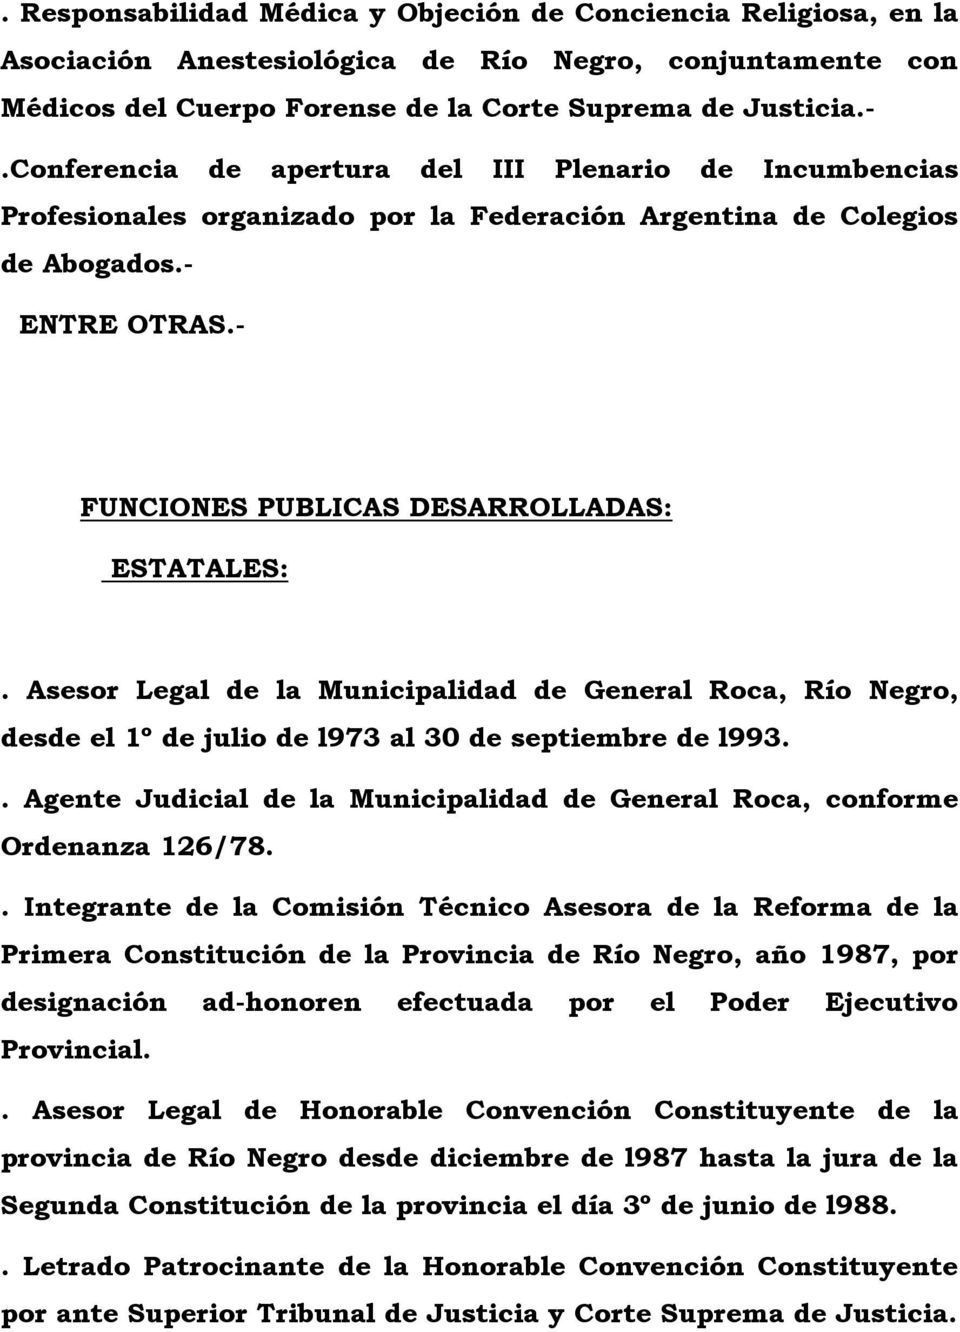 Asesor Legal de la Municipalidad de General Roca, Río Negro, desde el 1º de julio de l973 al 30 de septiembre de l993.. Agente Judicial de la Municipalidad de General Roca, conforme Ordenanza 126/78.